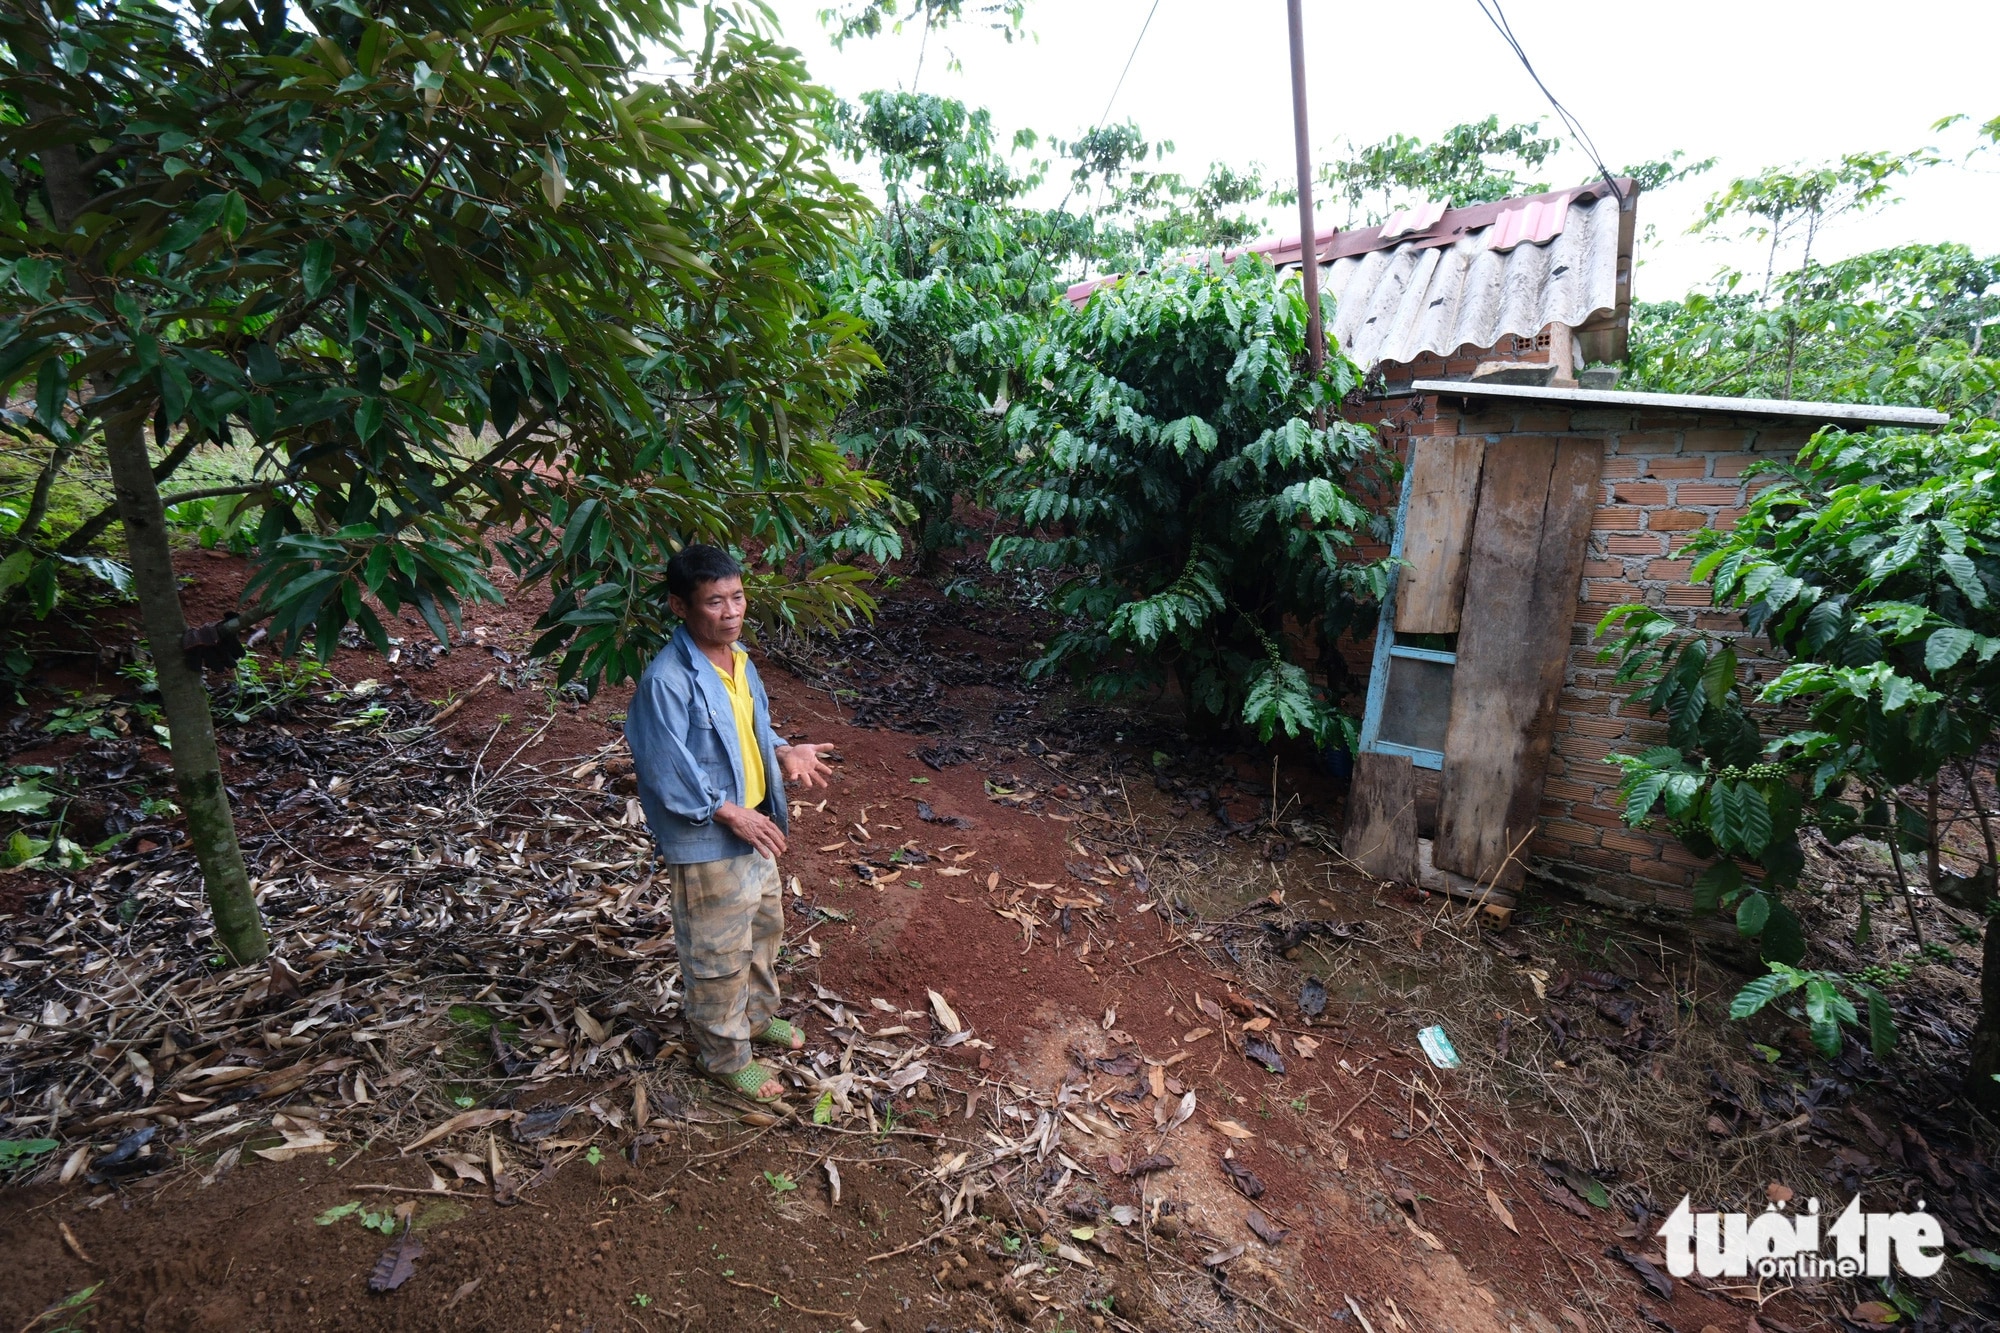 Ông Phạm Văn Chuyển (55 tuổi, xã Lộc Quảng, huyện Bảo Lâm, tỉnh Lâm Đồng) không thể chuyển đổi mục đích sử dụng đất để cắt cho con làm nhà vì vướng Quyết định 866 - Ảnh: M.V.